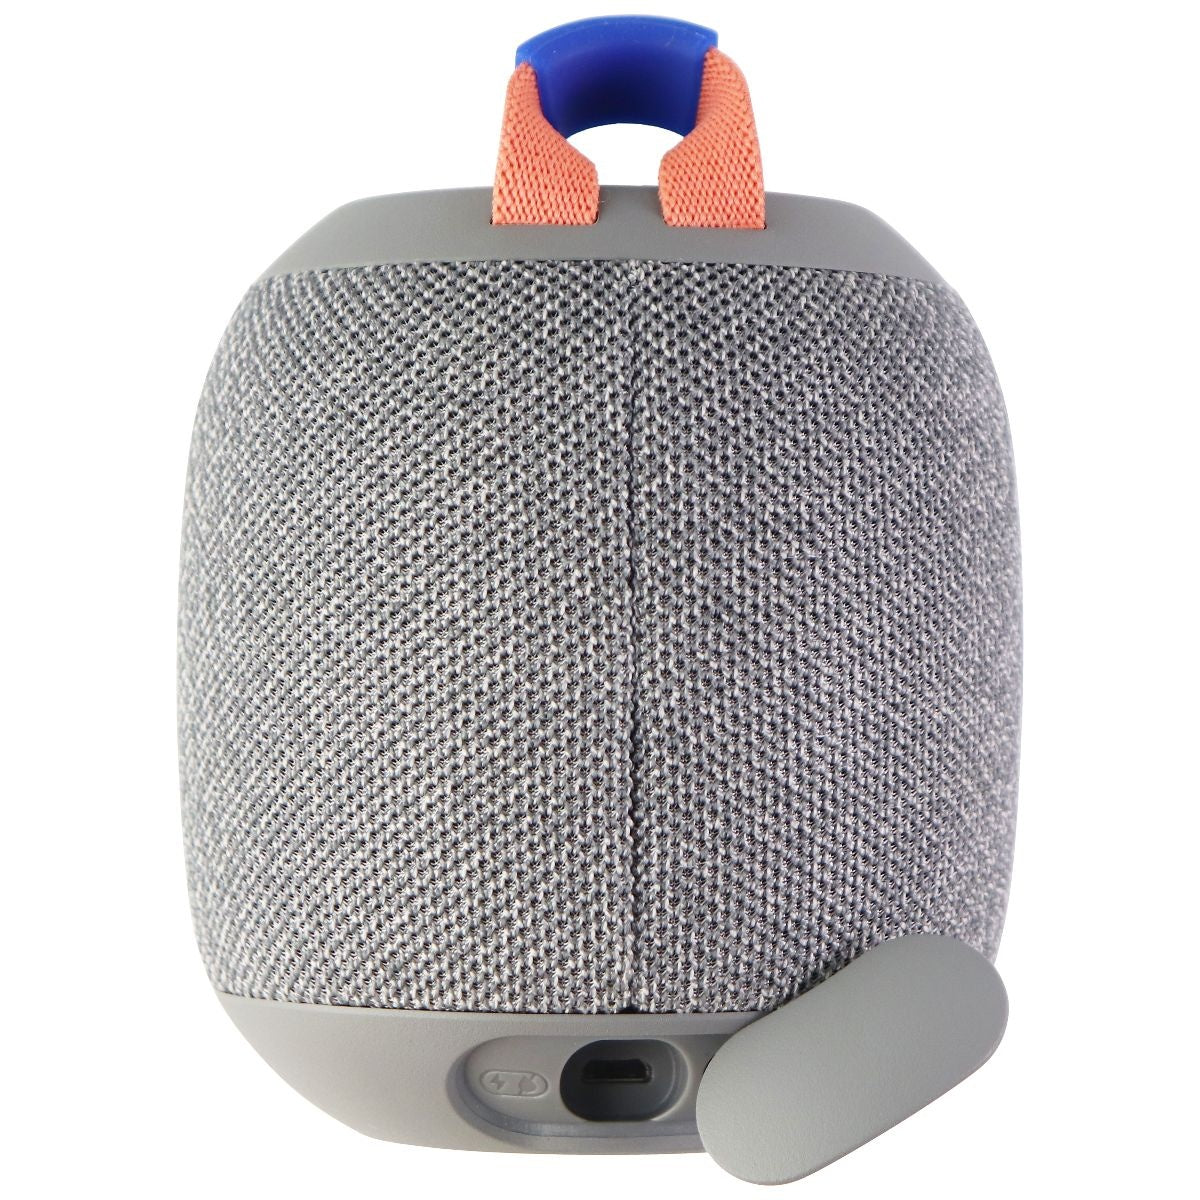 Ultimate Ears WONDERBOOM 2 Portable Bluetooth Waterproof Speaker - Crushed Gray Cell Phone - Audio Docks & Speakers Ultimate Ears    - Simple Cell Bulk Wholesale Pricing - USA Seller